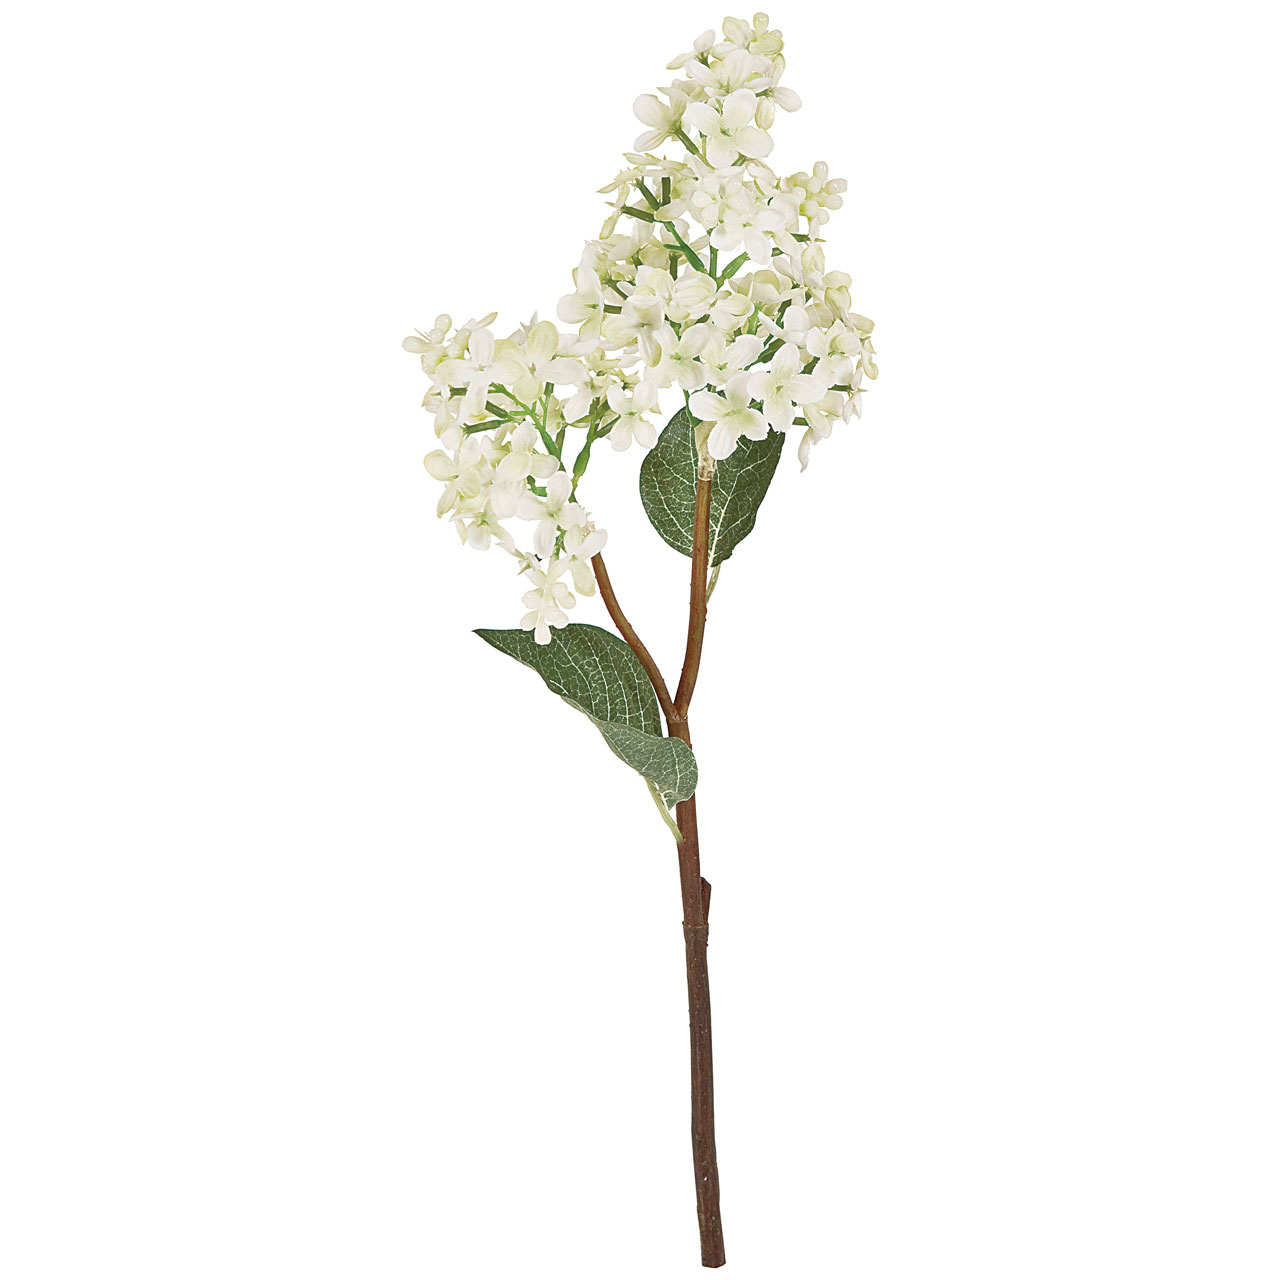 マイフラ】 通販/MAGIQ フレリア ライラック ホワイト アーティフィシャルフラワー 造花 FM003797-001 ライラック(ホワイト):  MAGIQ(アーティフィシャルフラワー 造花)/全国にMAGIQ、花器、花資材などをお届けします。